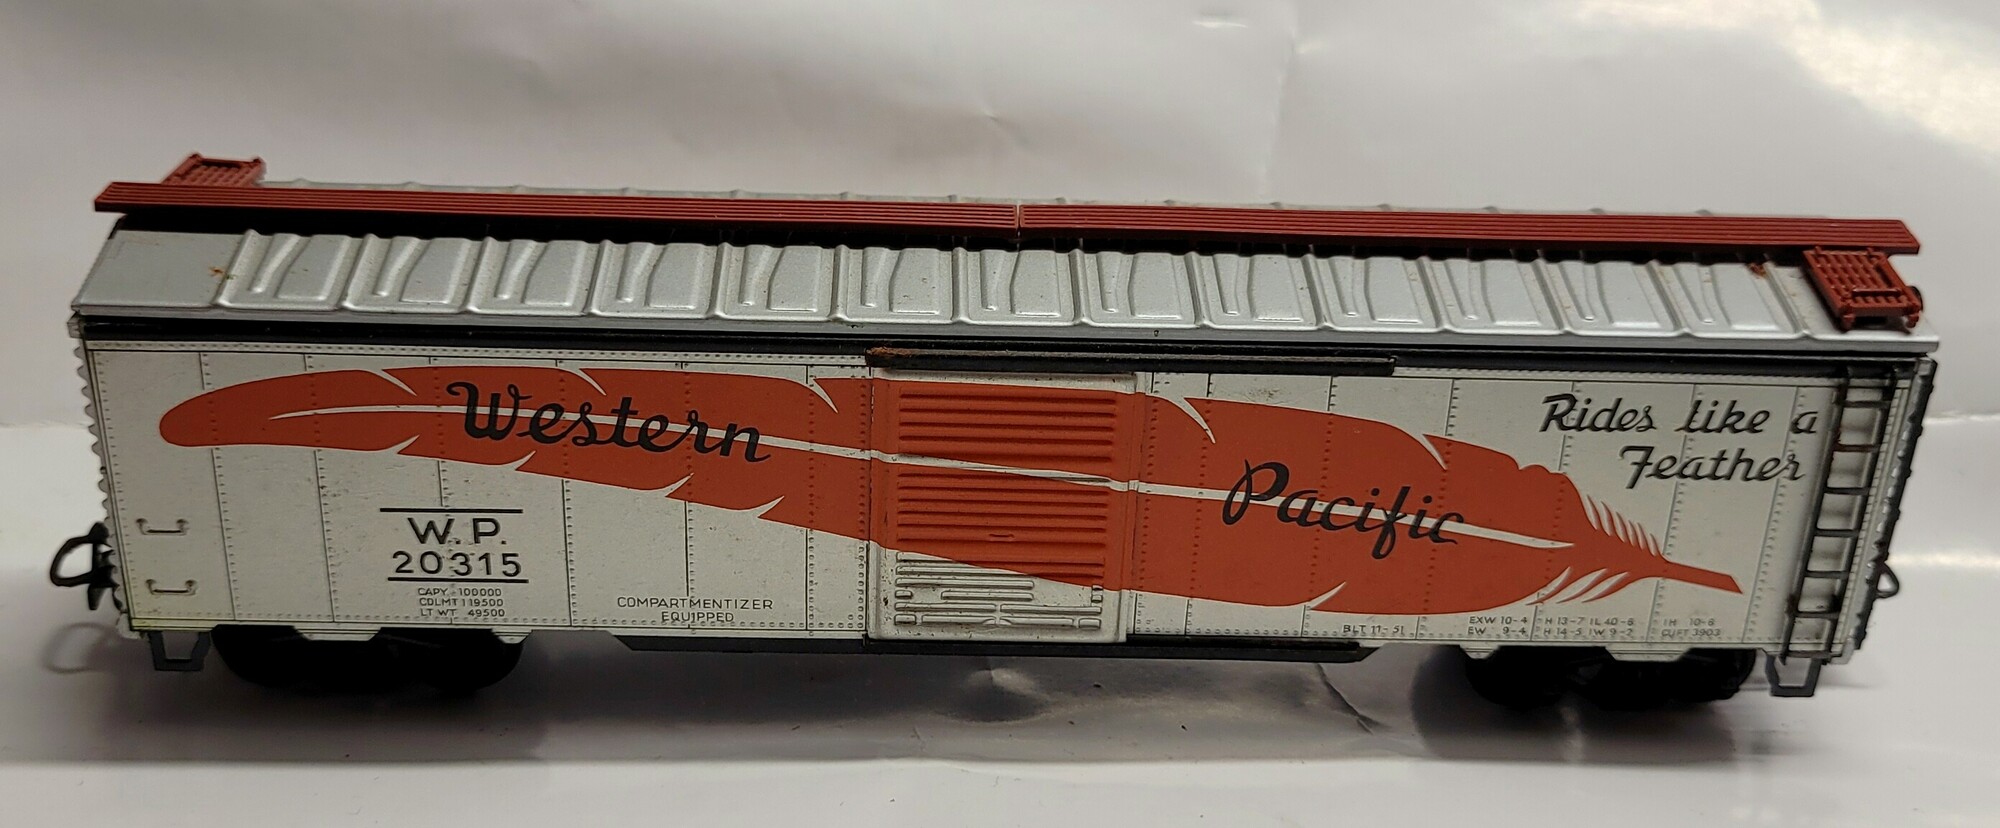 Märklin H0 USA-Box Car der Western Pacific, Blech-Gehäuse, Aufschrift Western Pacific W.P. 20315